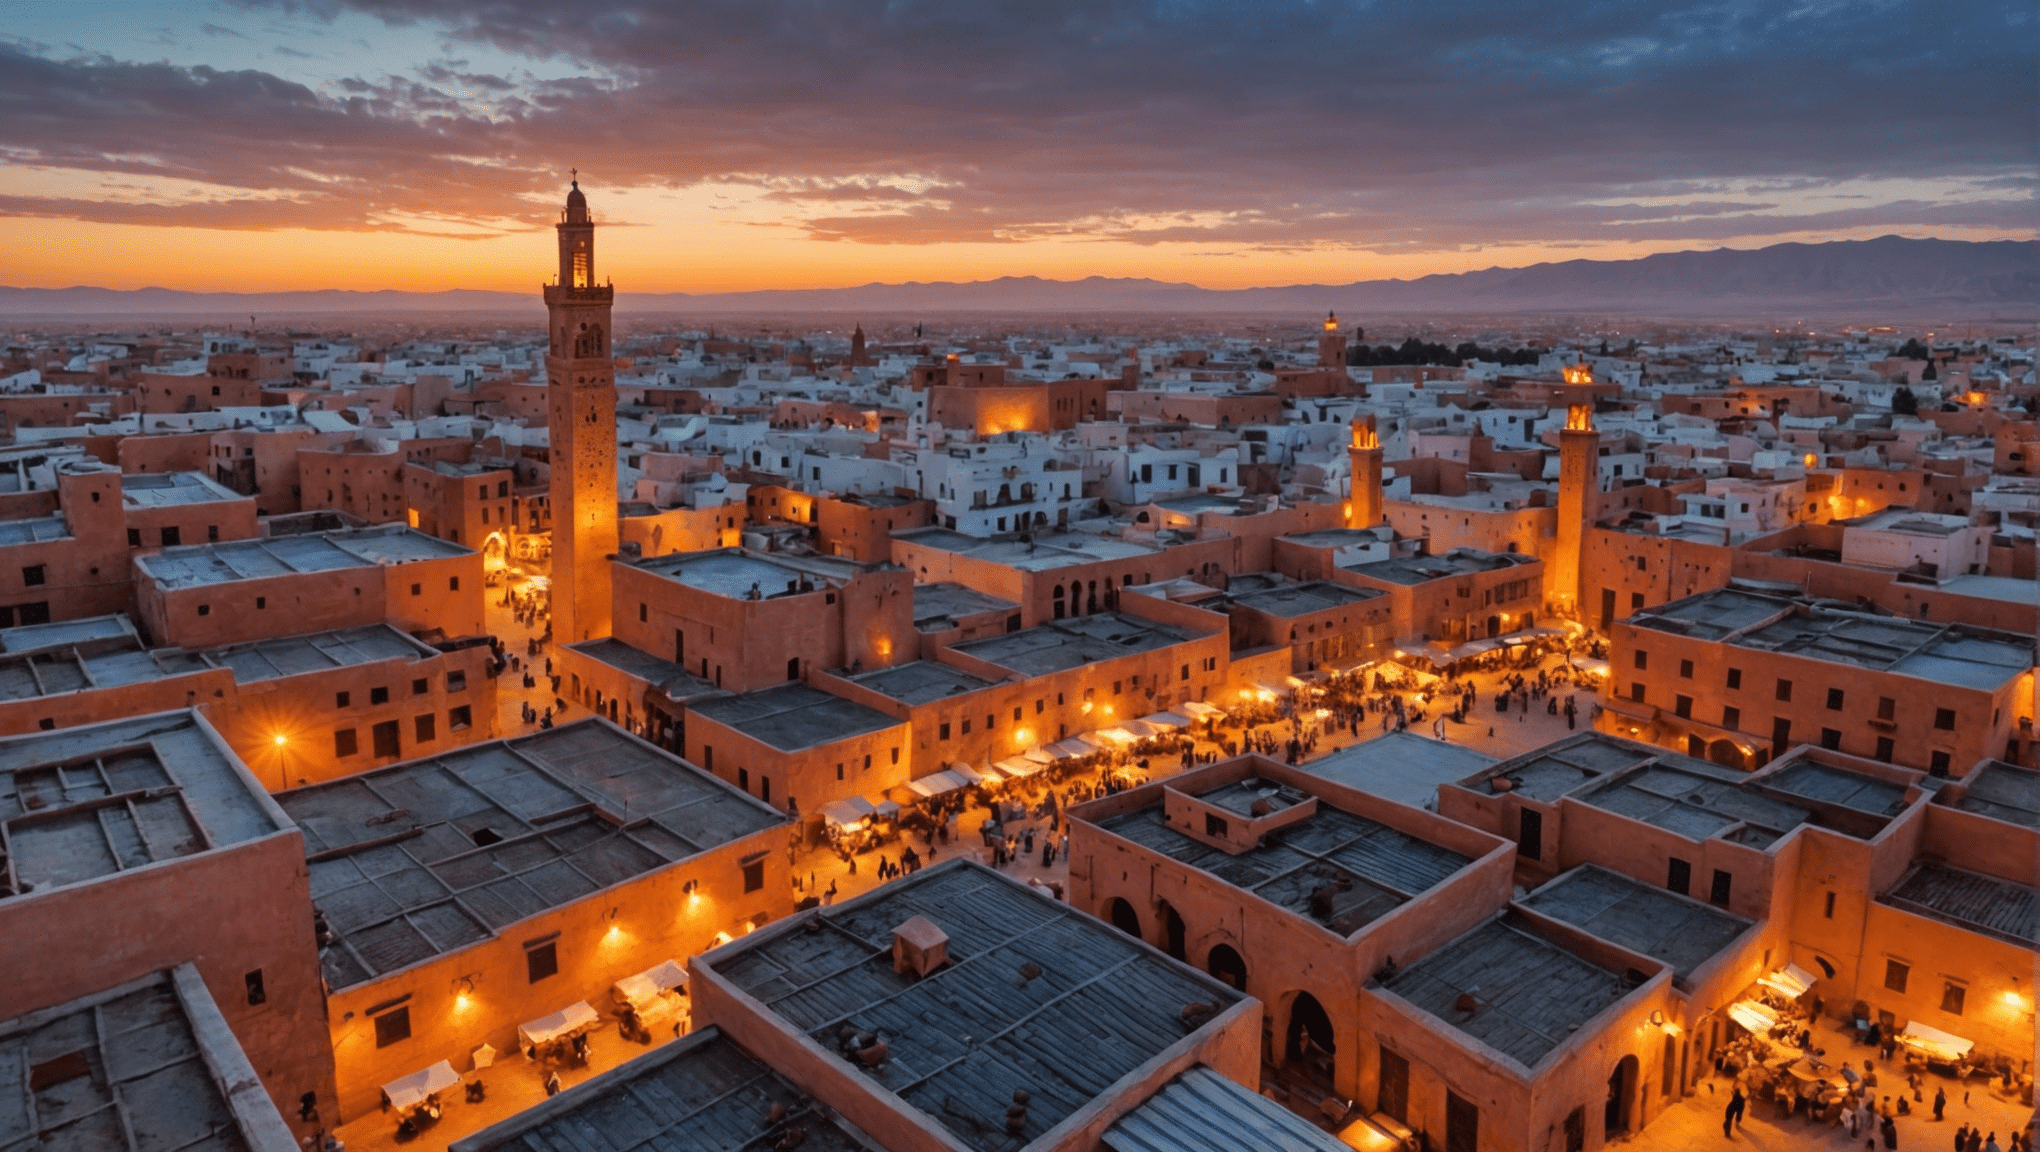 Descubra las condiciones meteorológicas en Marruecos en enero y planifique su viaje con confianza. Infórmese sobre la temperatura, las precipitaciones y más para aprovechar al máximo su visita.